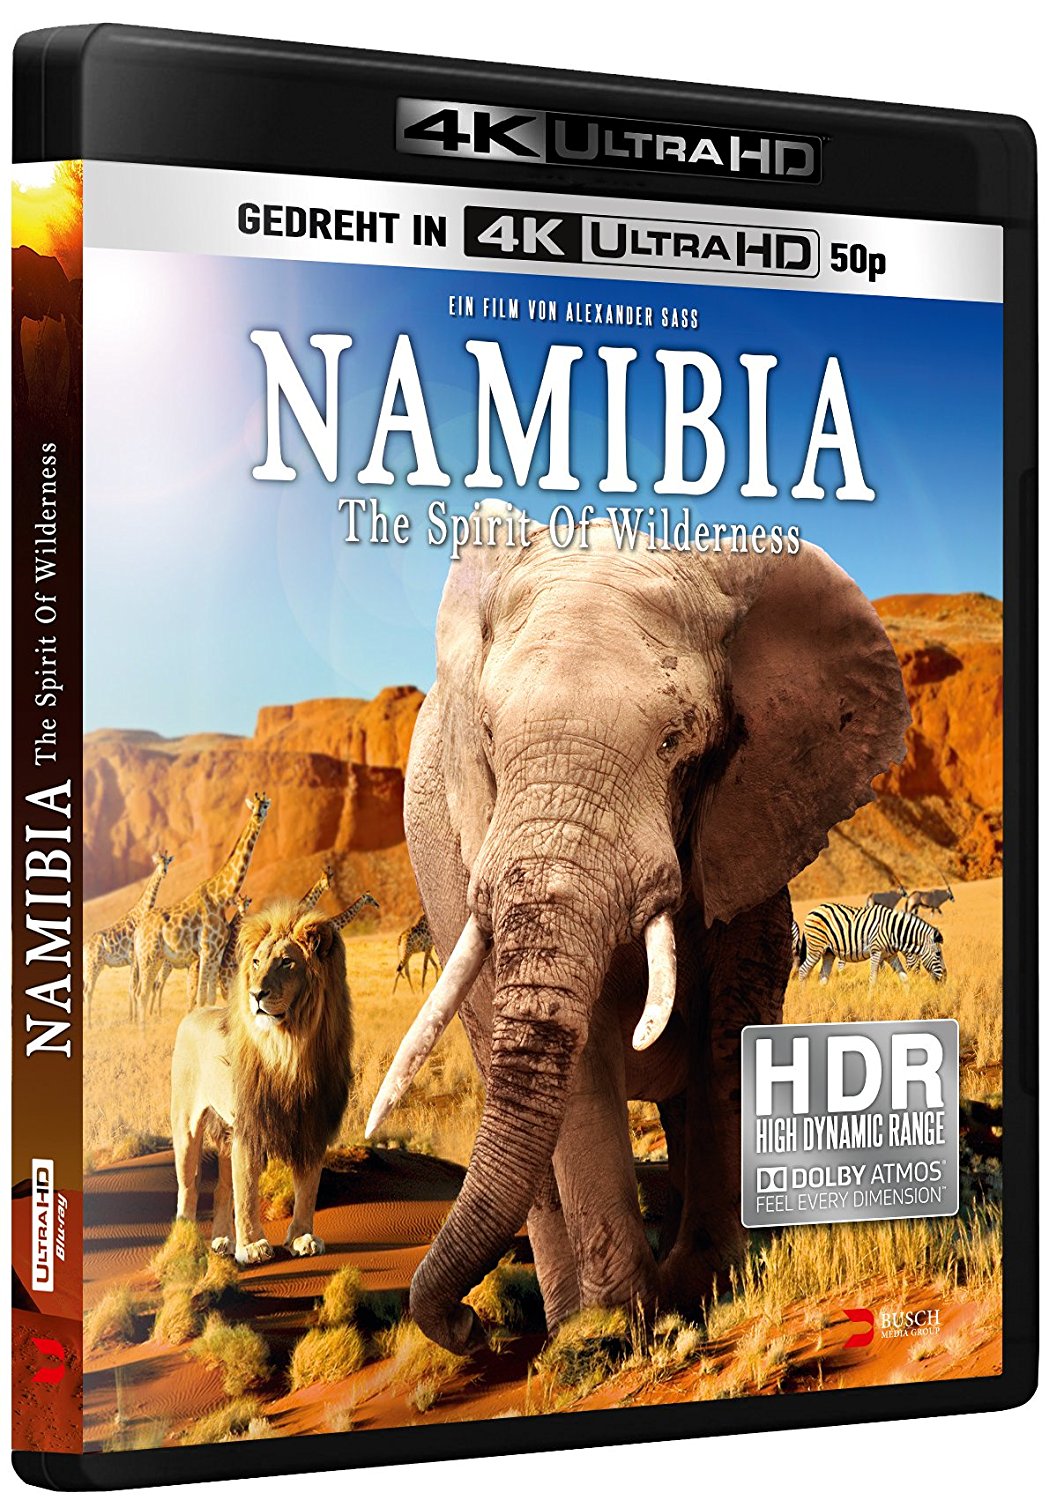 Namibia-Dokumentation auf UHD-BD mit HDR-Bild und deutschem Atmos-Ton